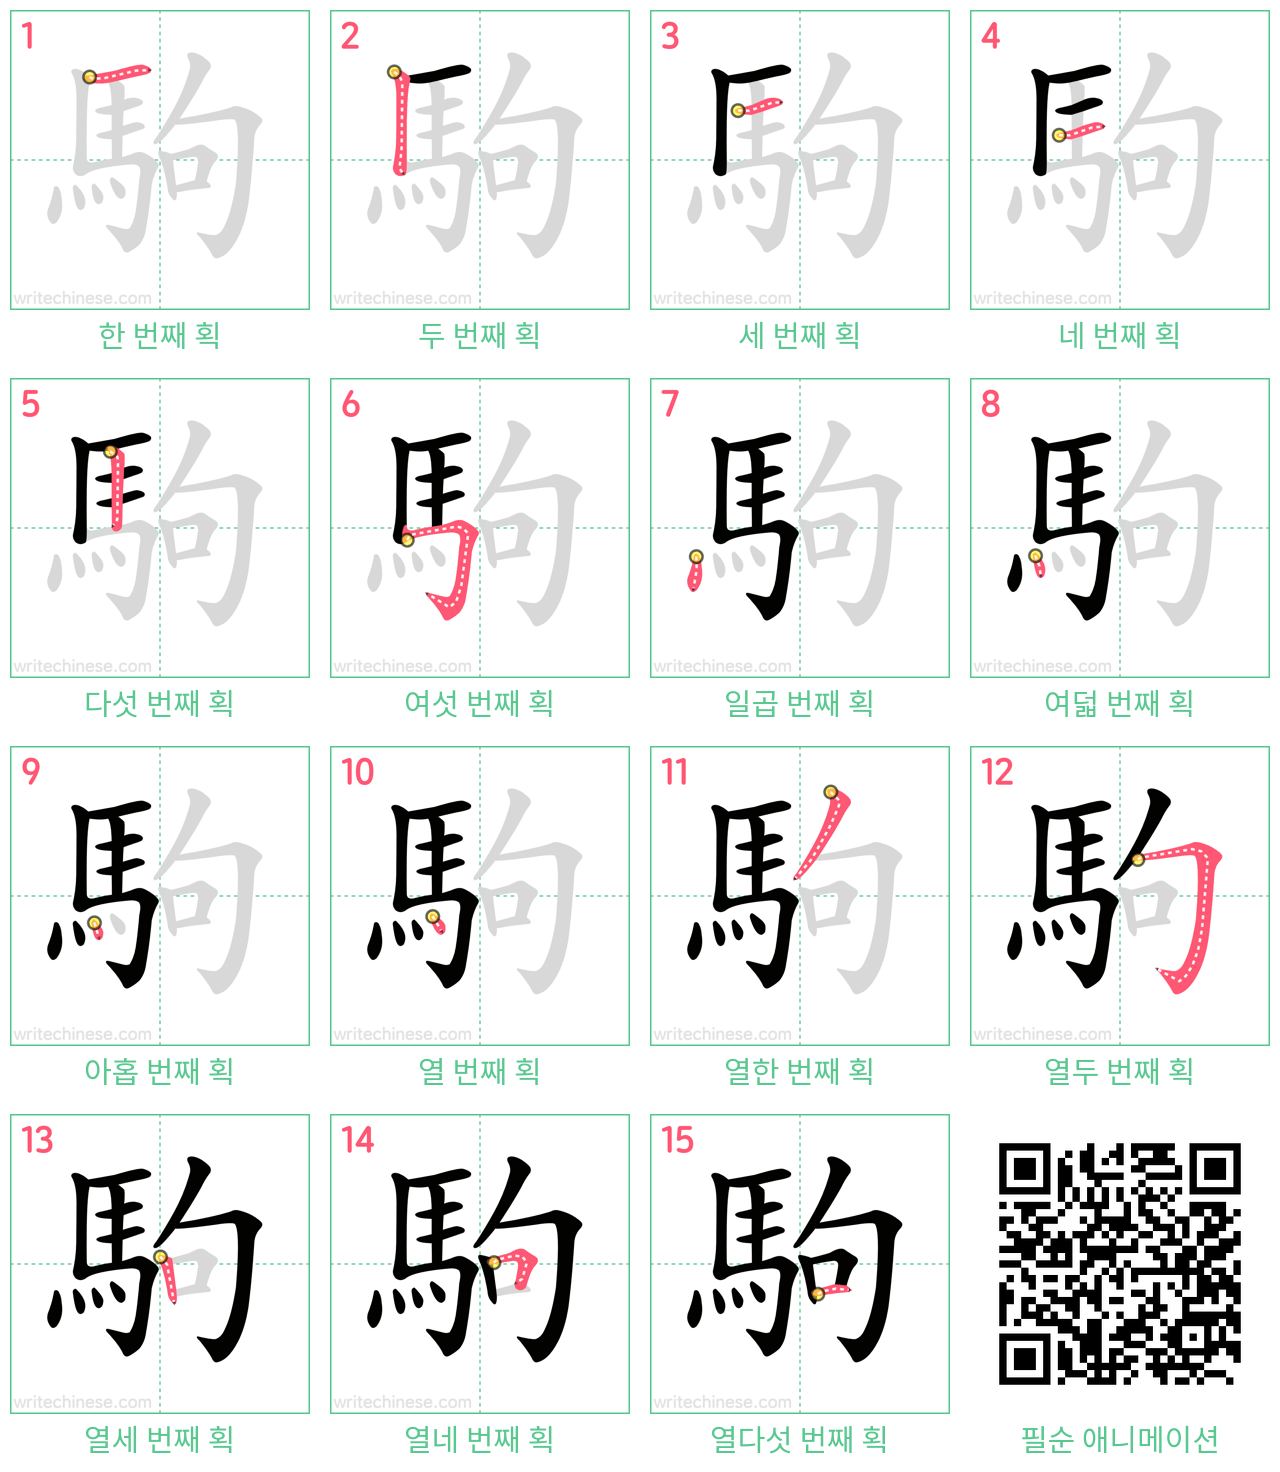 駒 step-by-step stroke order diagrams